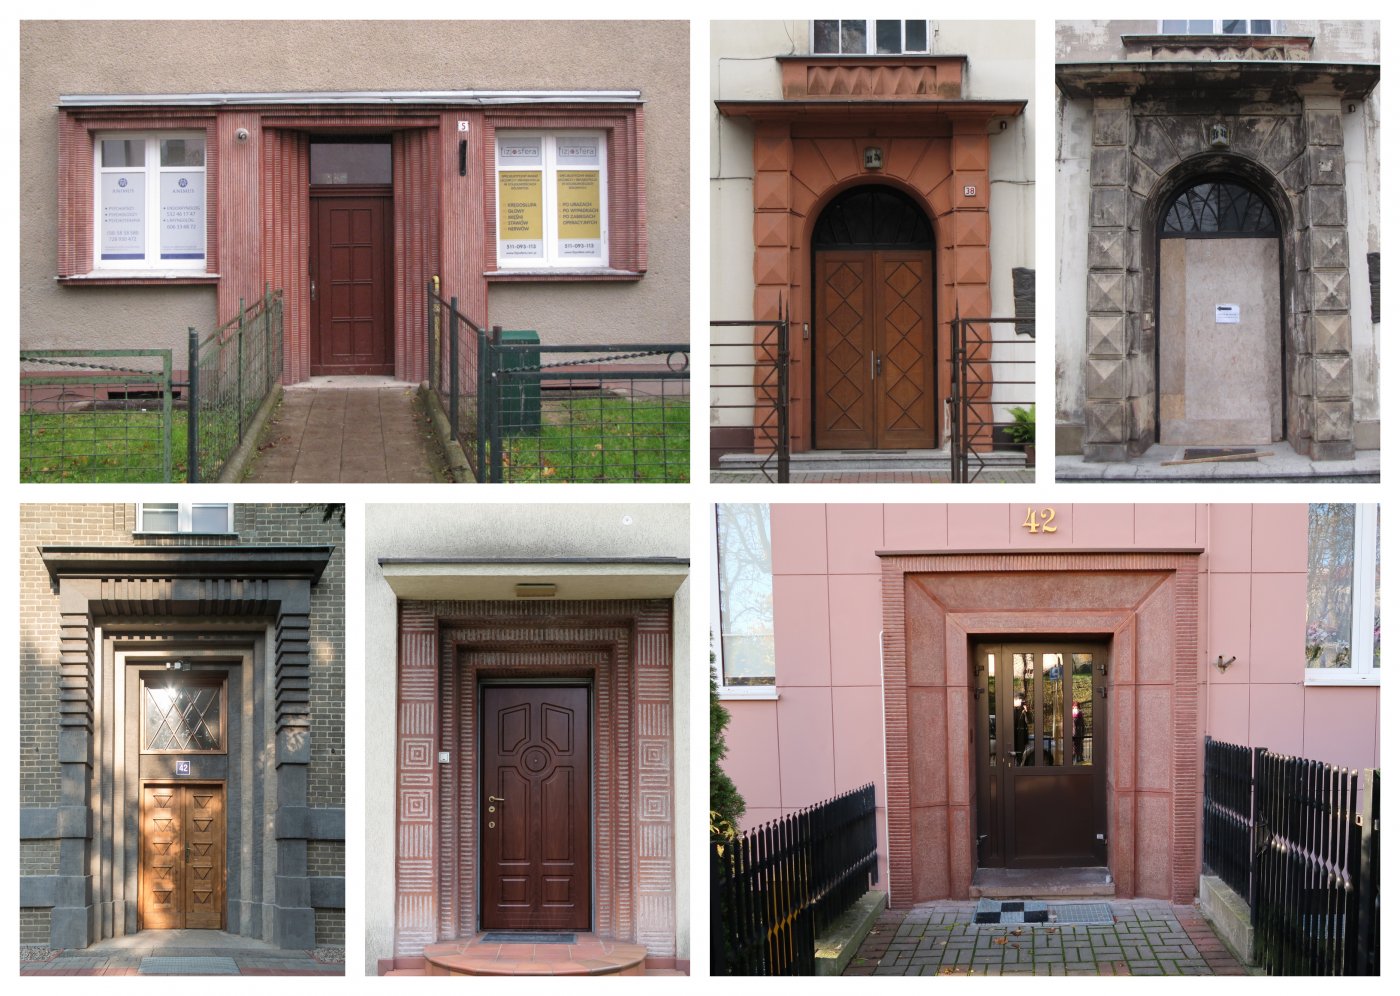 Collage zdjęć przedstawiających wejścia do budynków zabytkowych, w większości portali z ozdobnym tynkiem i innymi elementami architektonicznymi